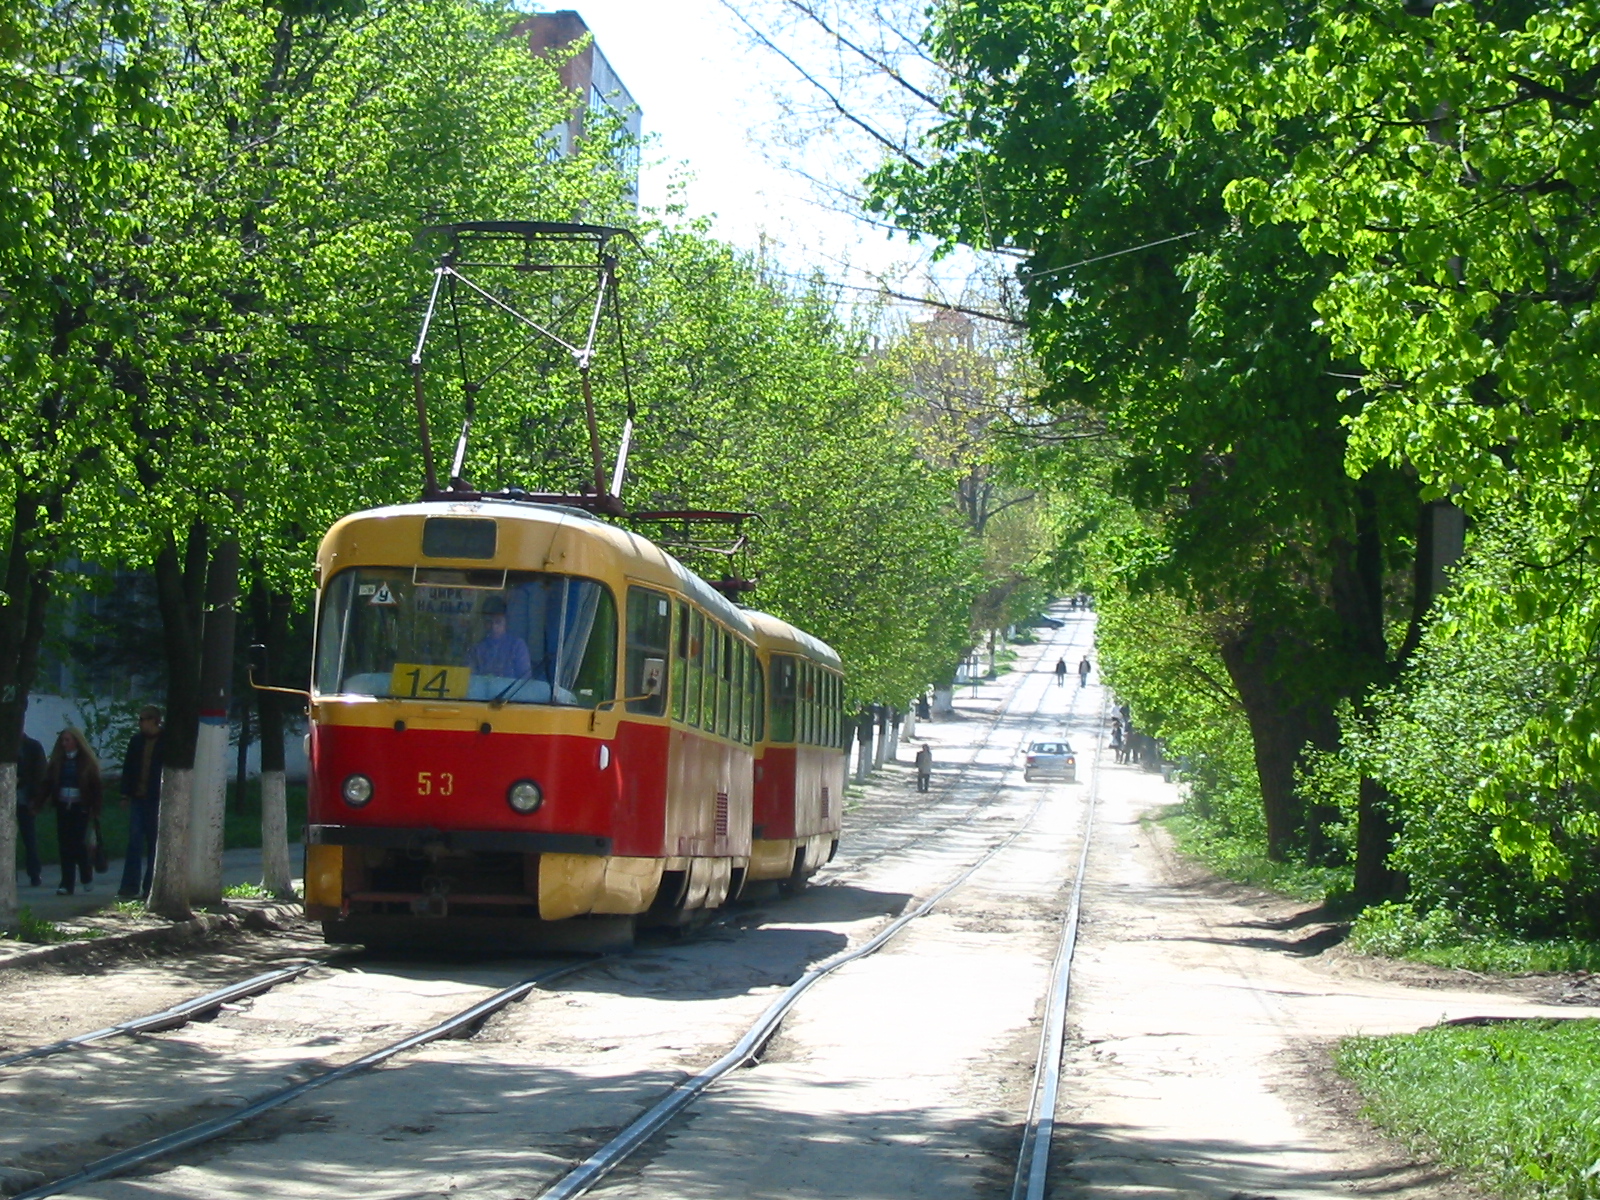 Трамвай Tatra T3 №53 14 маршрута на уклоне по улице Энгельса в центре